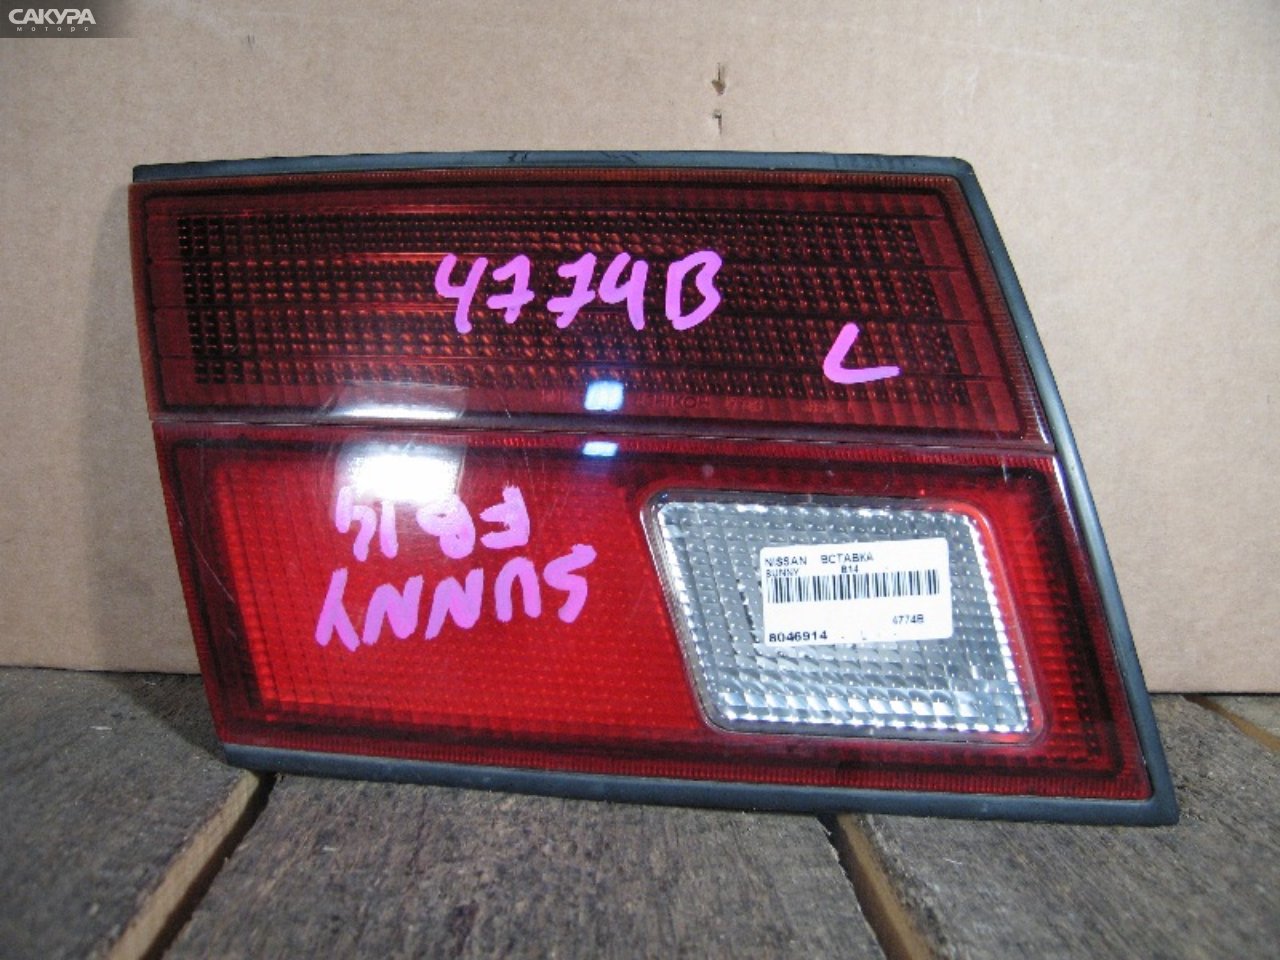 Фонарь вставка багажника левый Nissan Sunny B14 4774B: купить в Сакура Абакан.